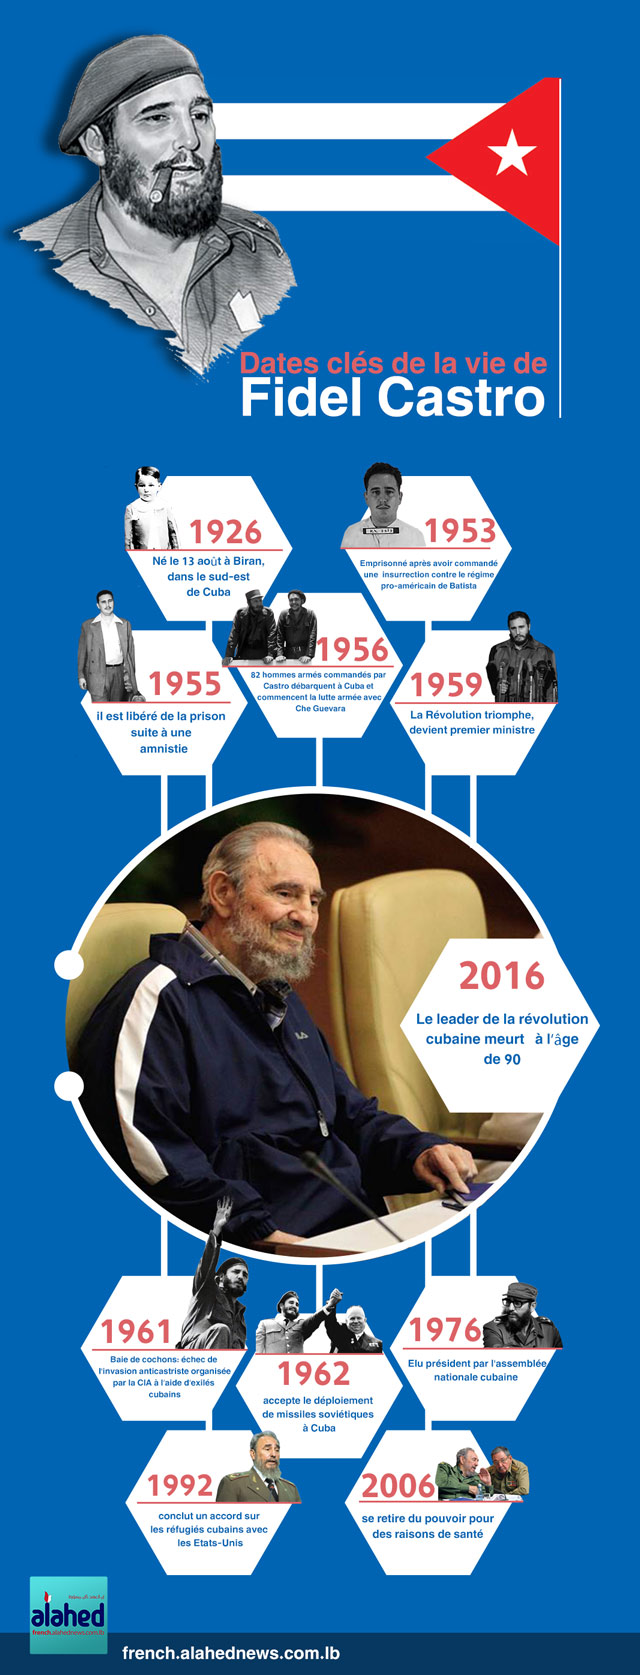 Date clés de la vie de Fidel Castro